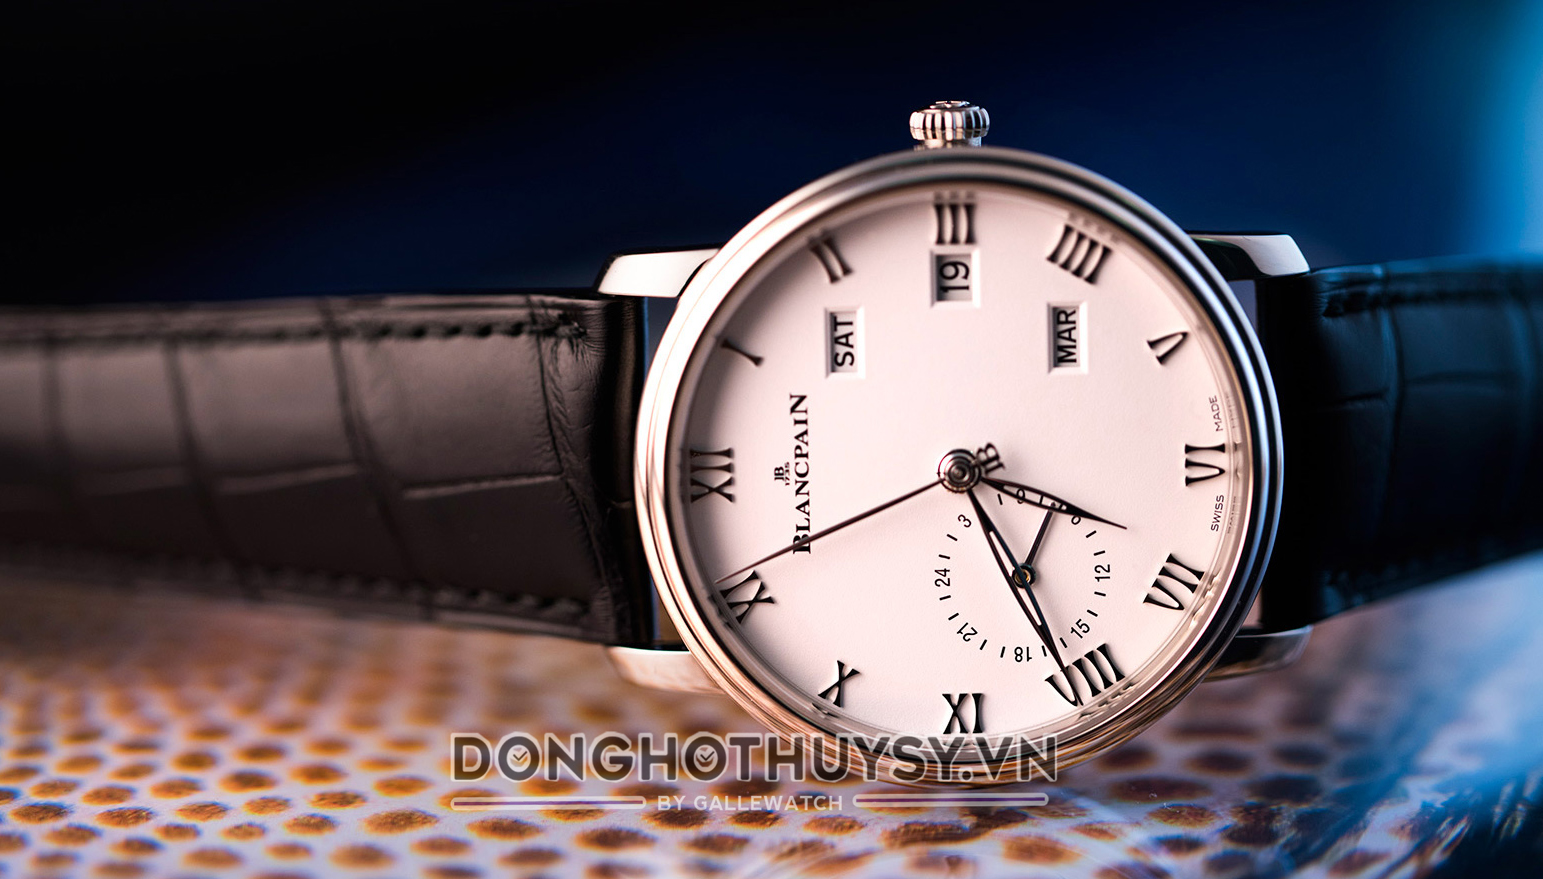 Bộ sưu tập đồng hồ thương hiệu Blancpain nổi bật